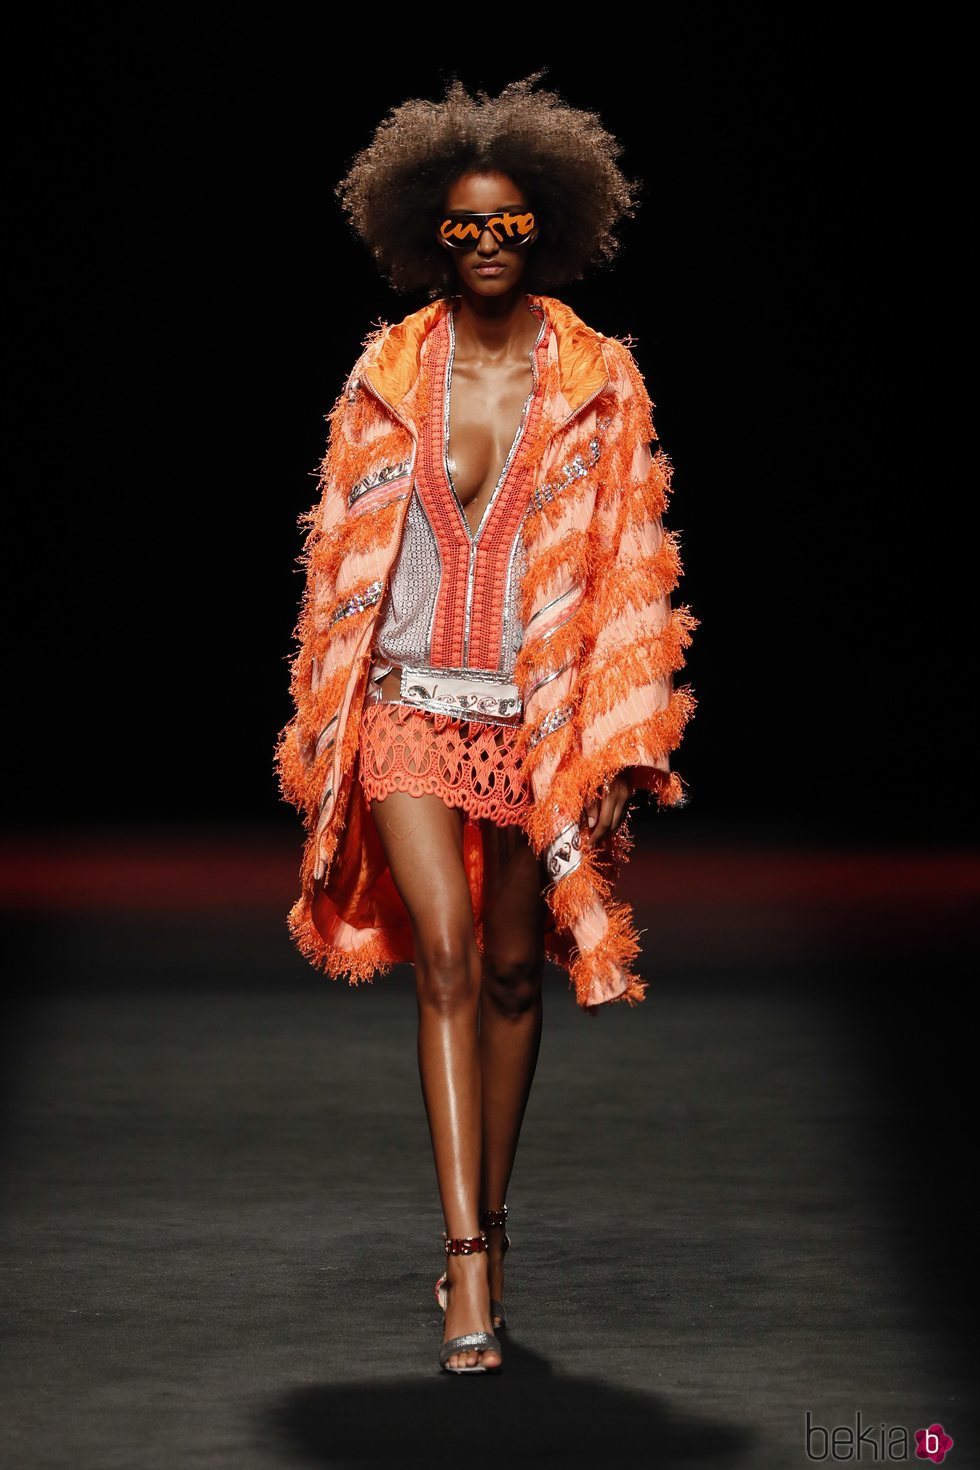 Modelo desfilando con un look en color naranja de la colección primavera/verano 2020 de Custo Barcelona en la MBFWMadrid julio 2019